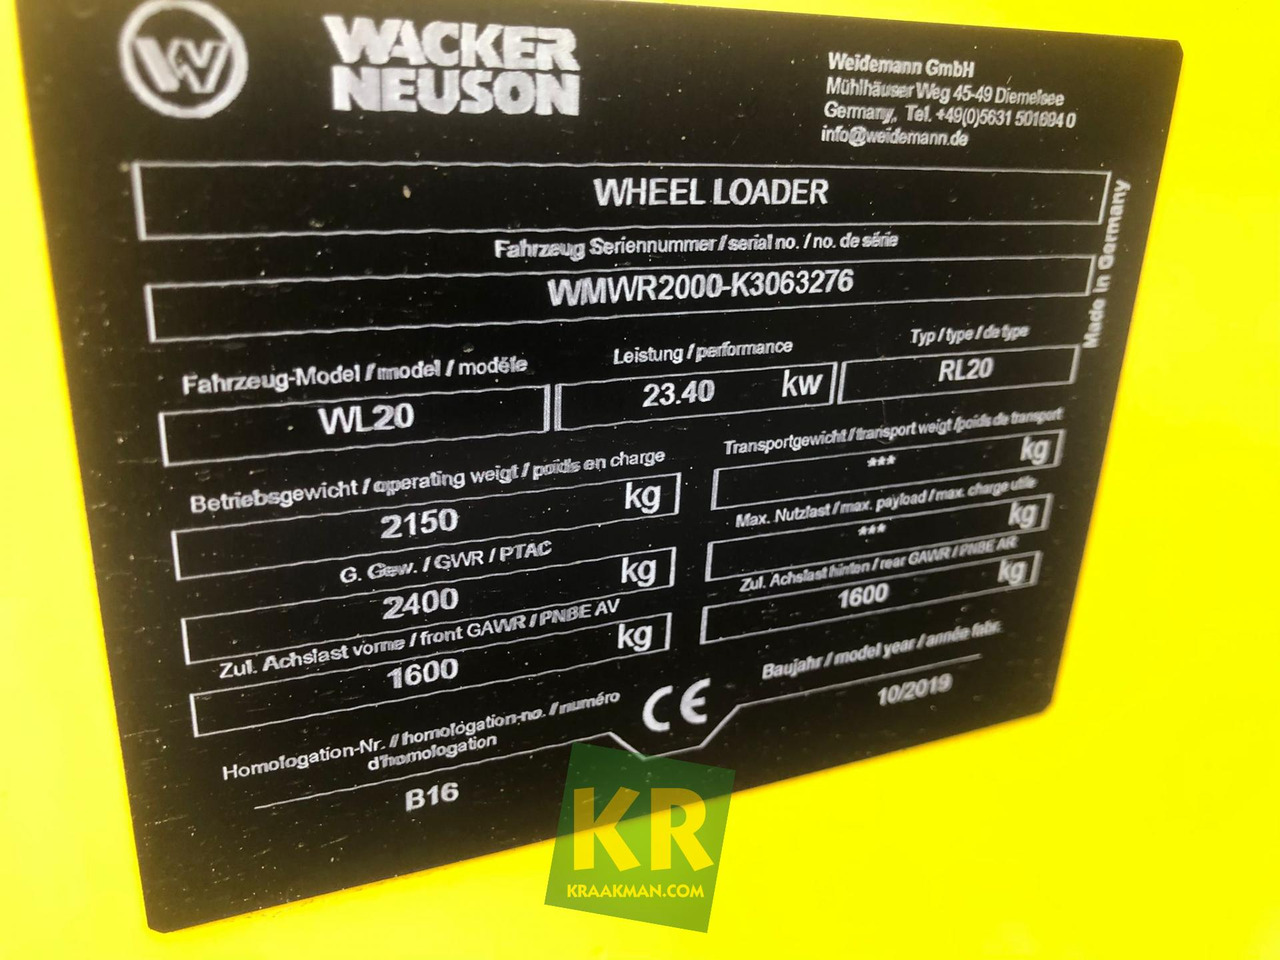 Kniklader WL20 WIELLADER Wacker Neuson